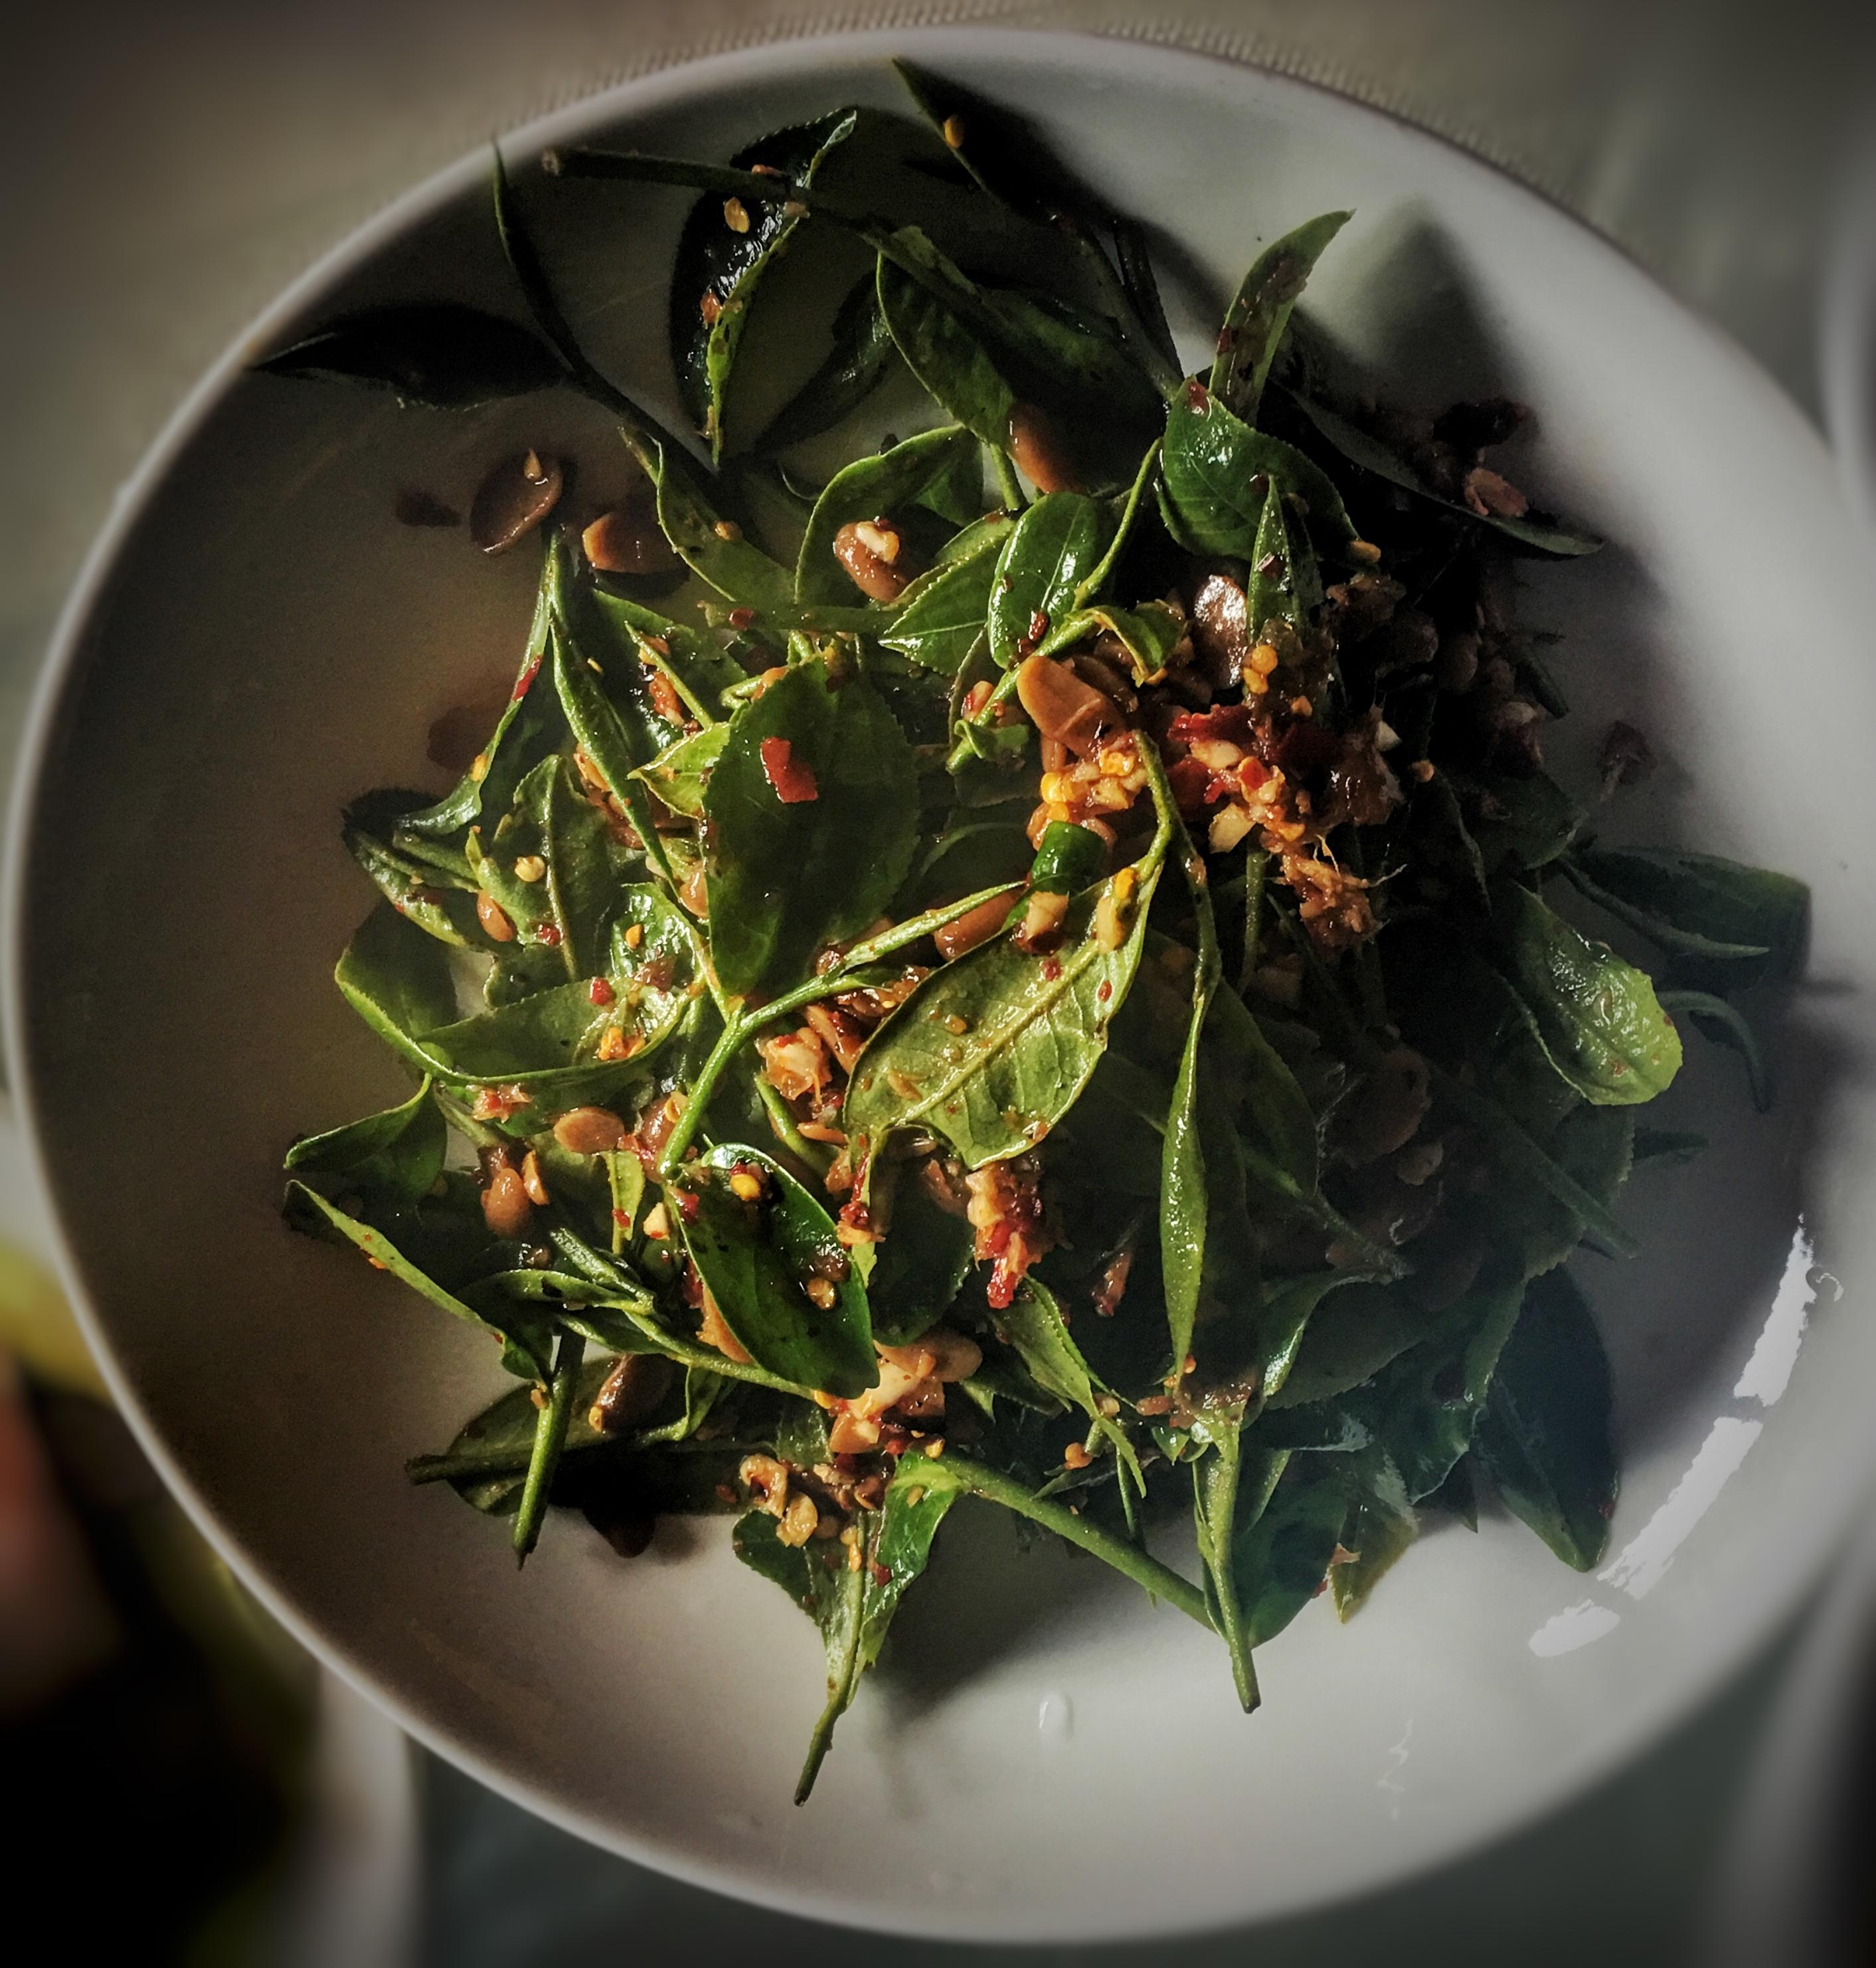 从茶园采摘鲜嫩的茶芽入菜,无论是鸡,猪,鱼,虾均可配以茶叶做菜,它能